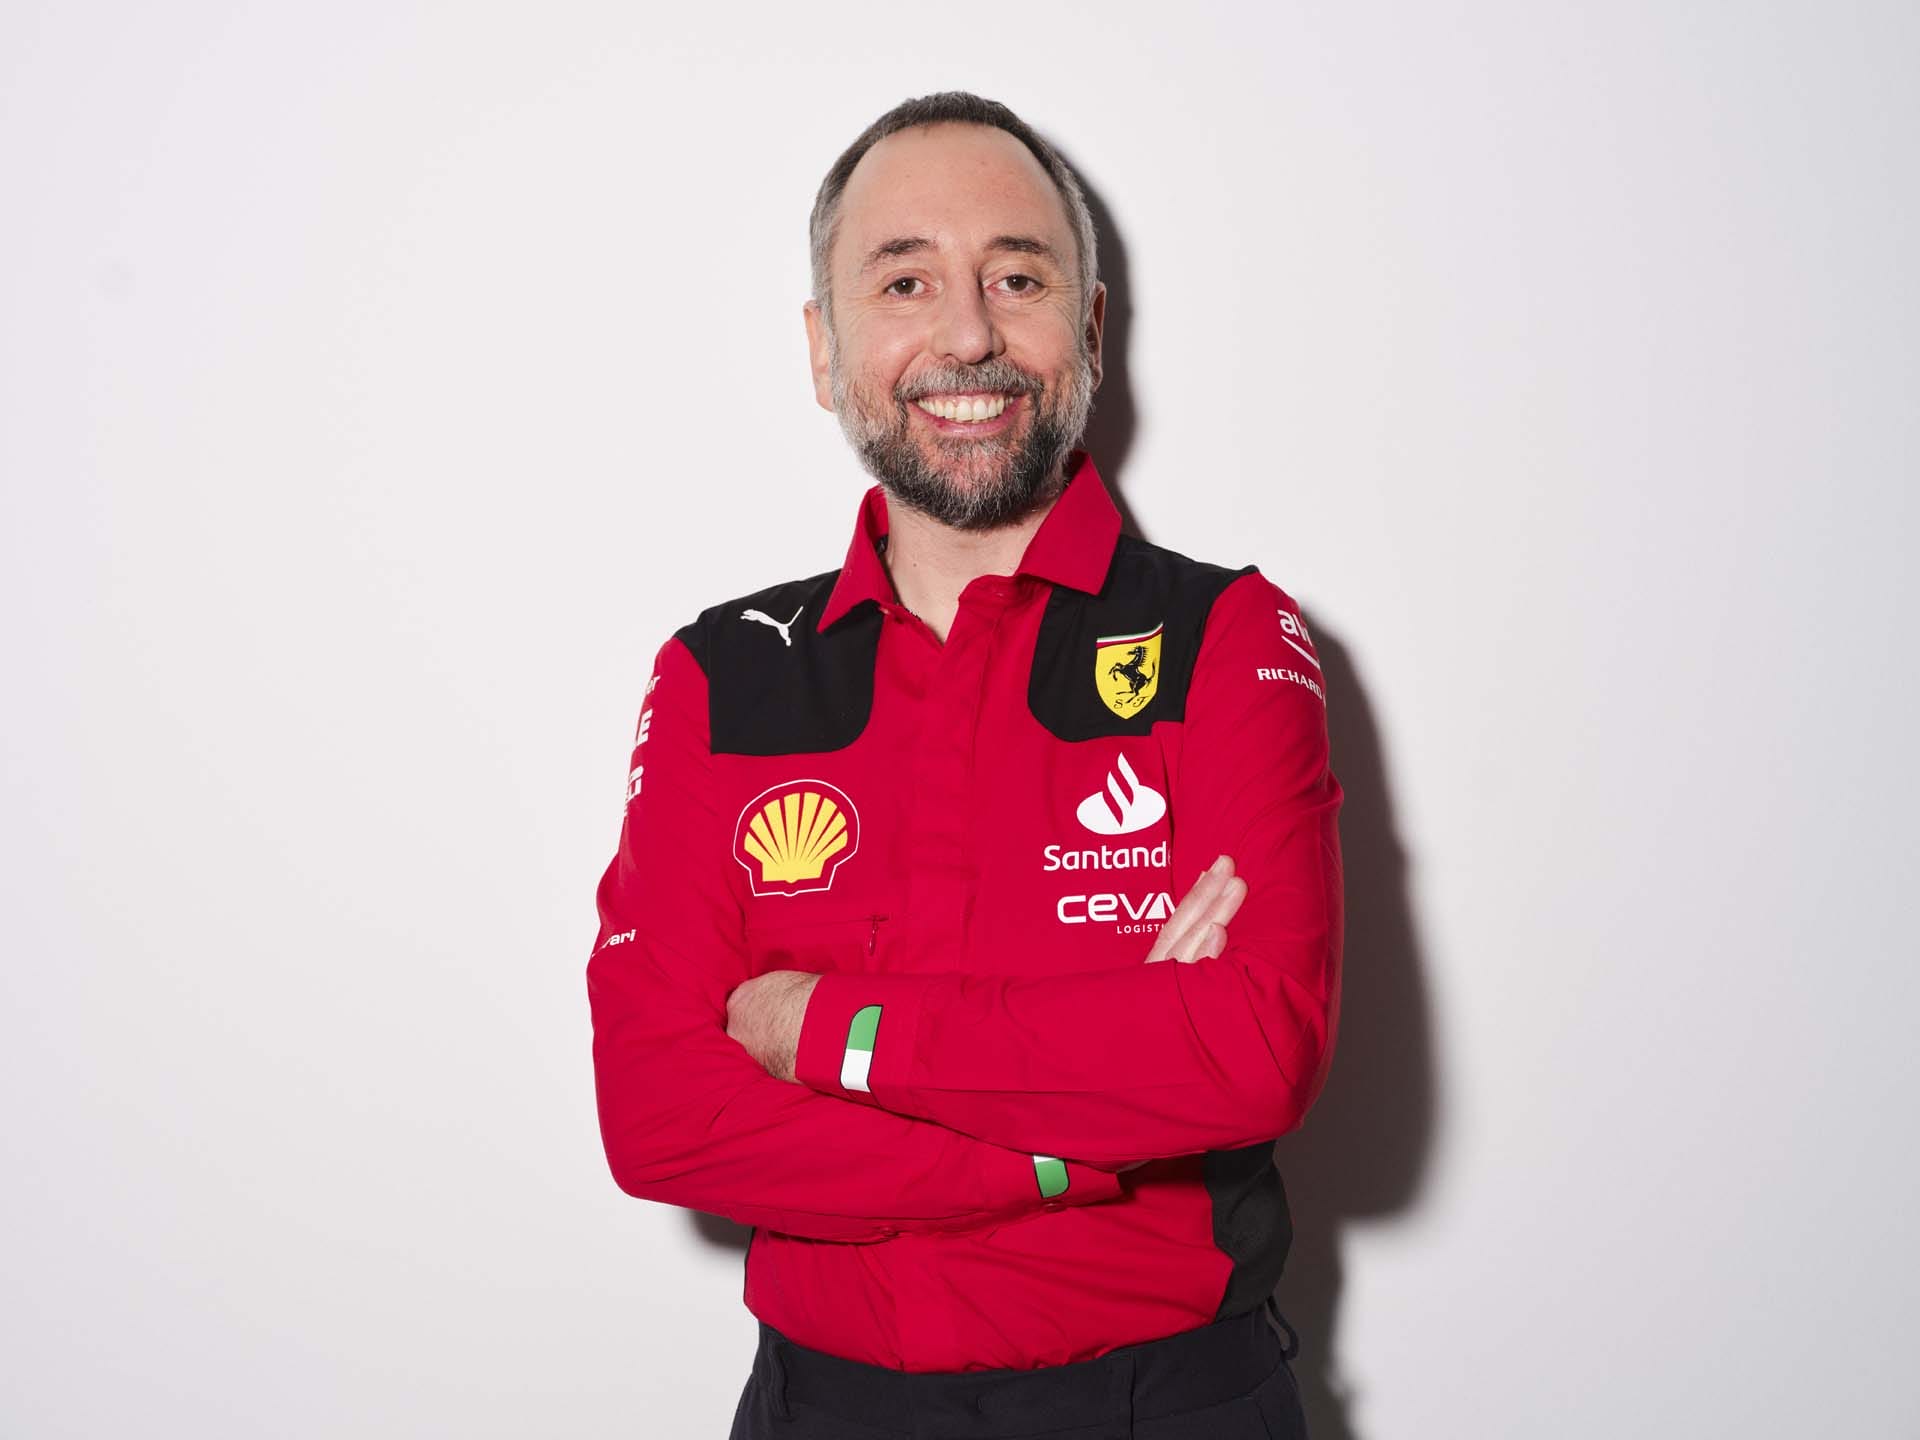 Őrült fordulat az F1-ben: Aston Martin leigazolta a Ferrari technikai igazgatóját!